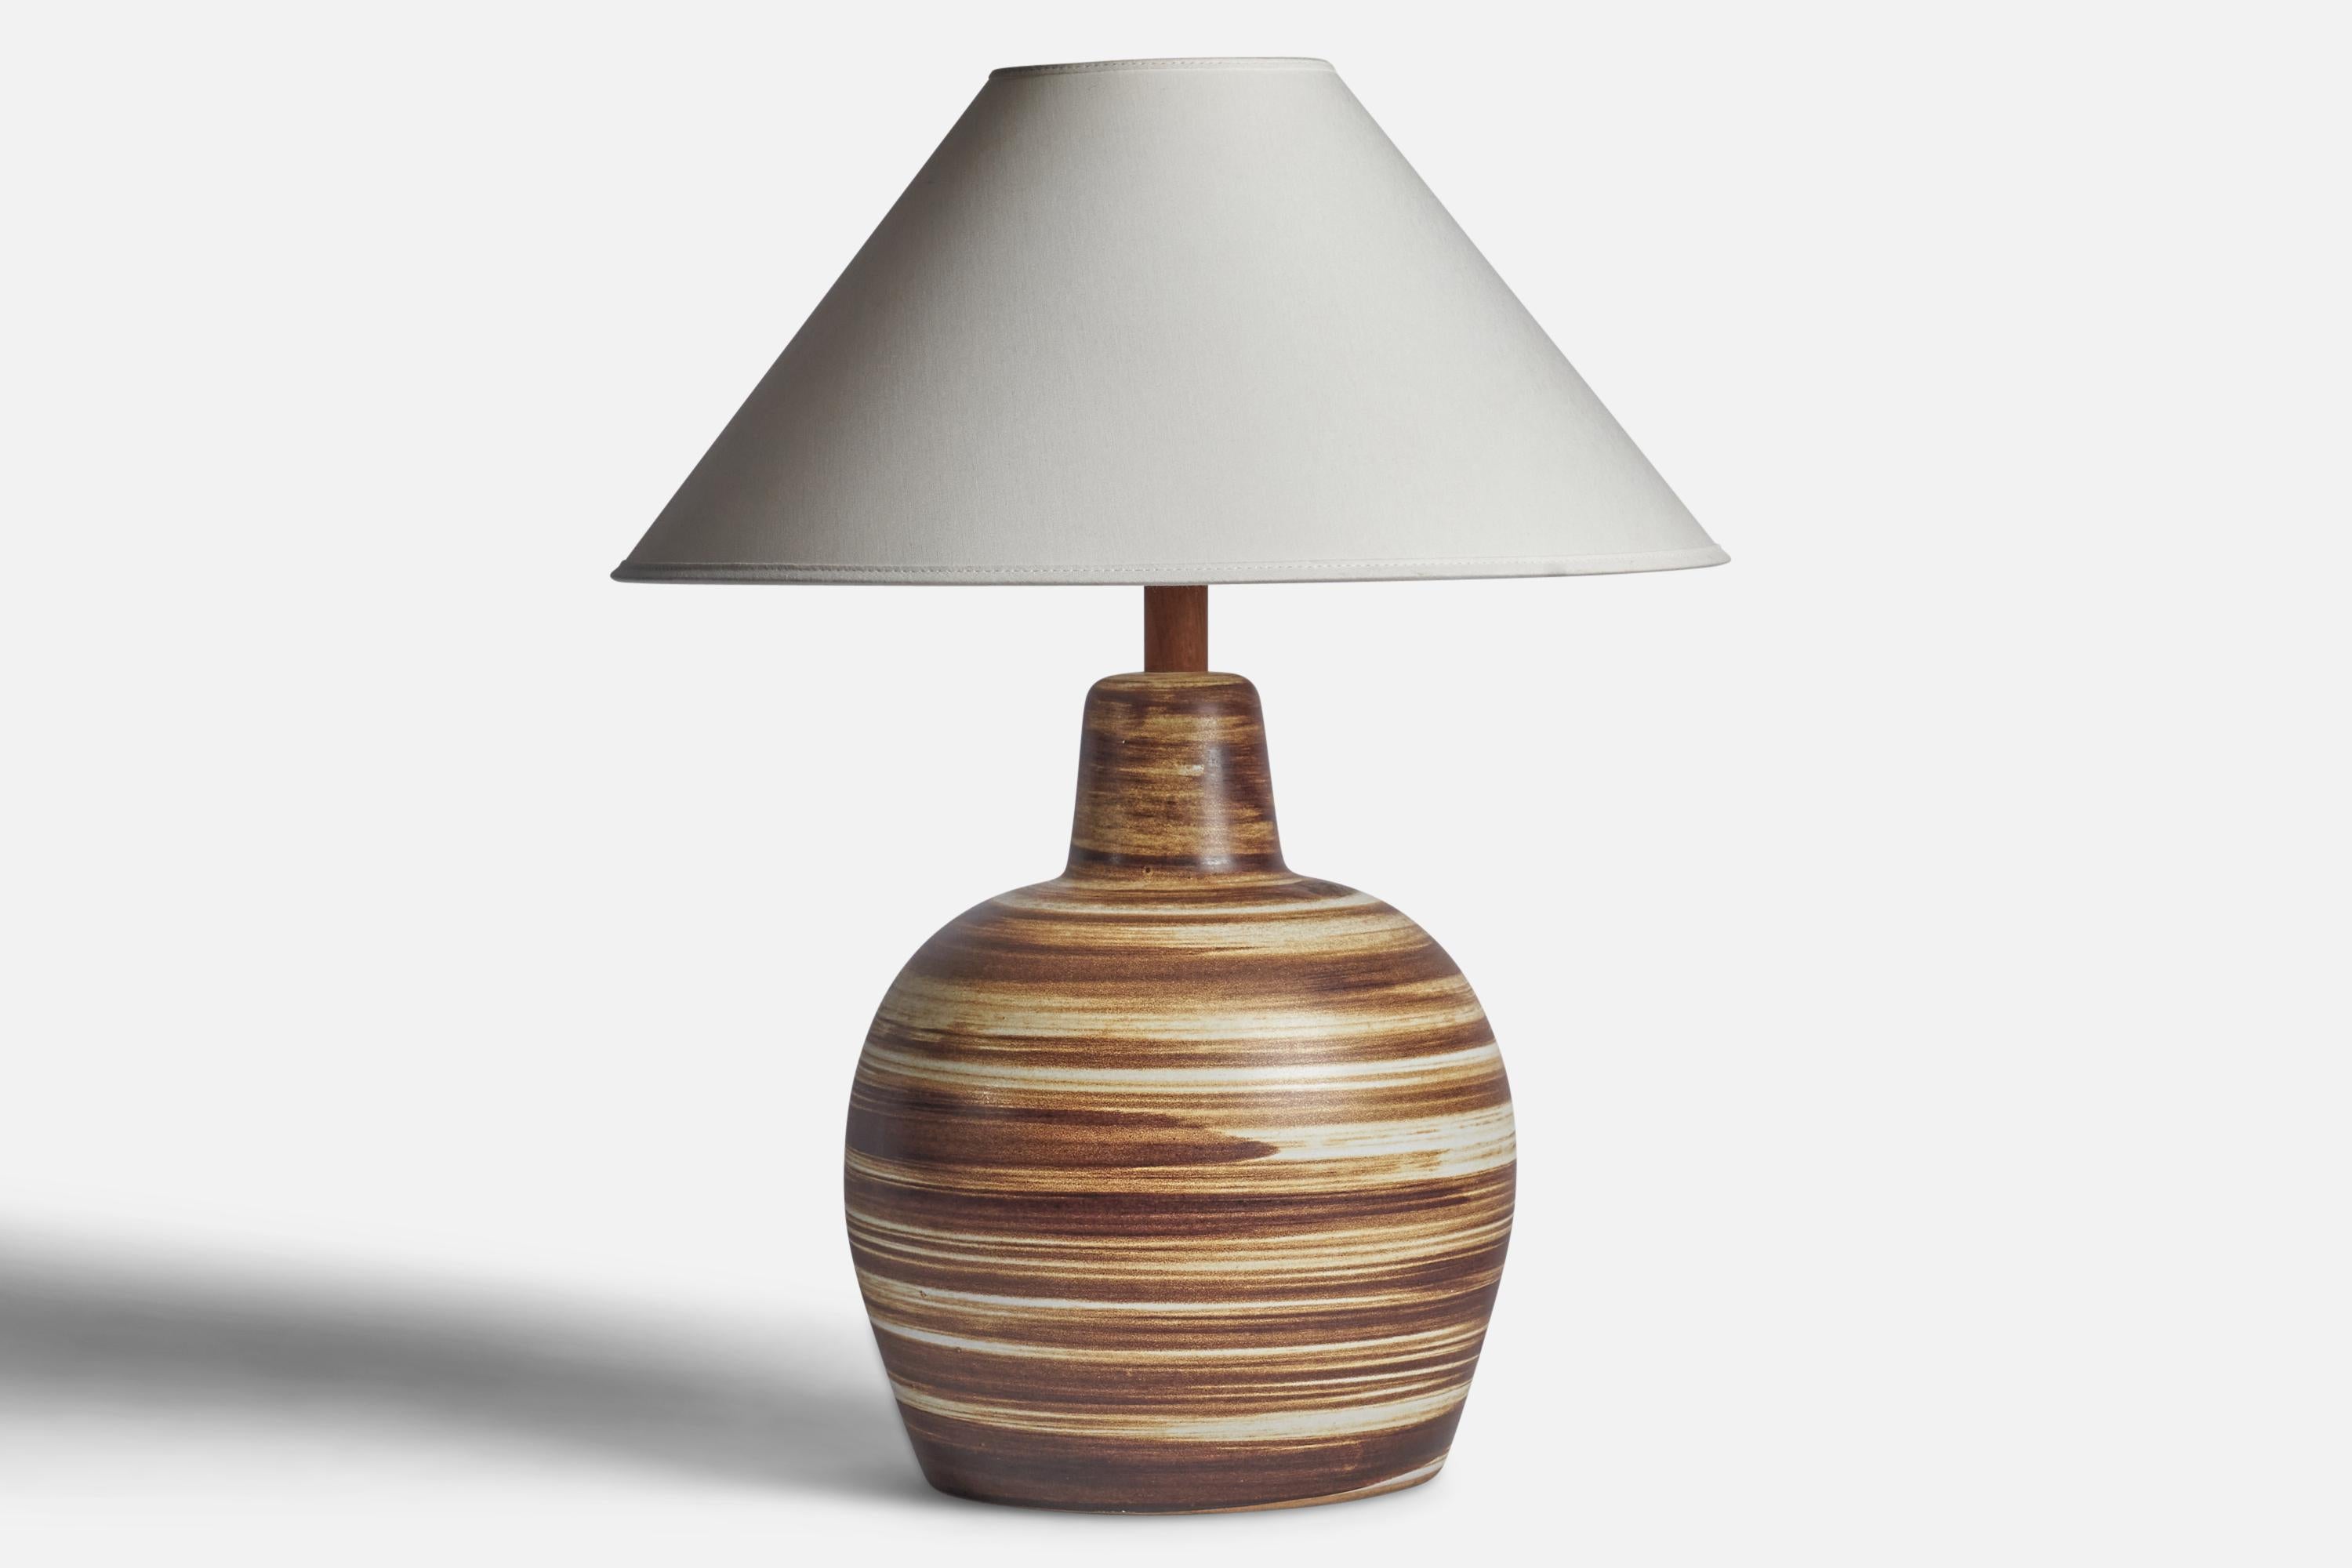 Lampe de table en céramique émaillée beige et brune et en noyer, conçue par Jane & Gordon Martz et produite par Marshall Studios, États-Unis, années 1960.

Dimensions de la lampe (pouces) : 15.65